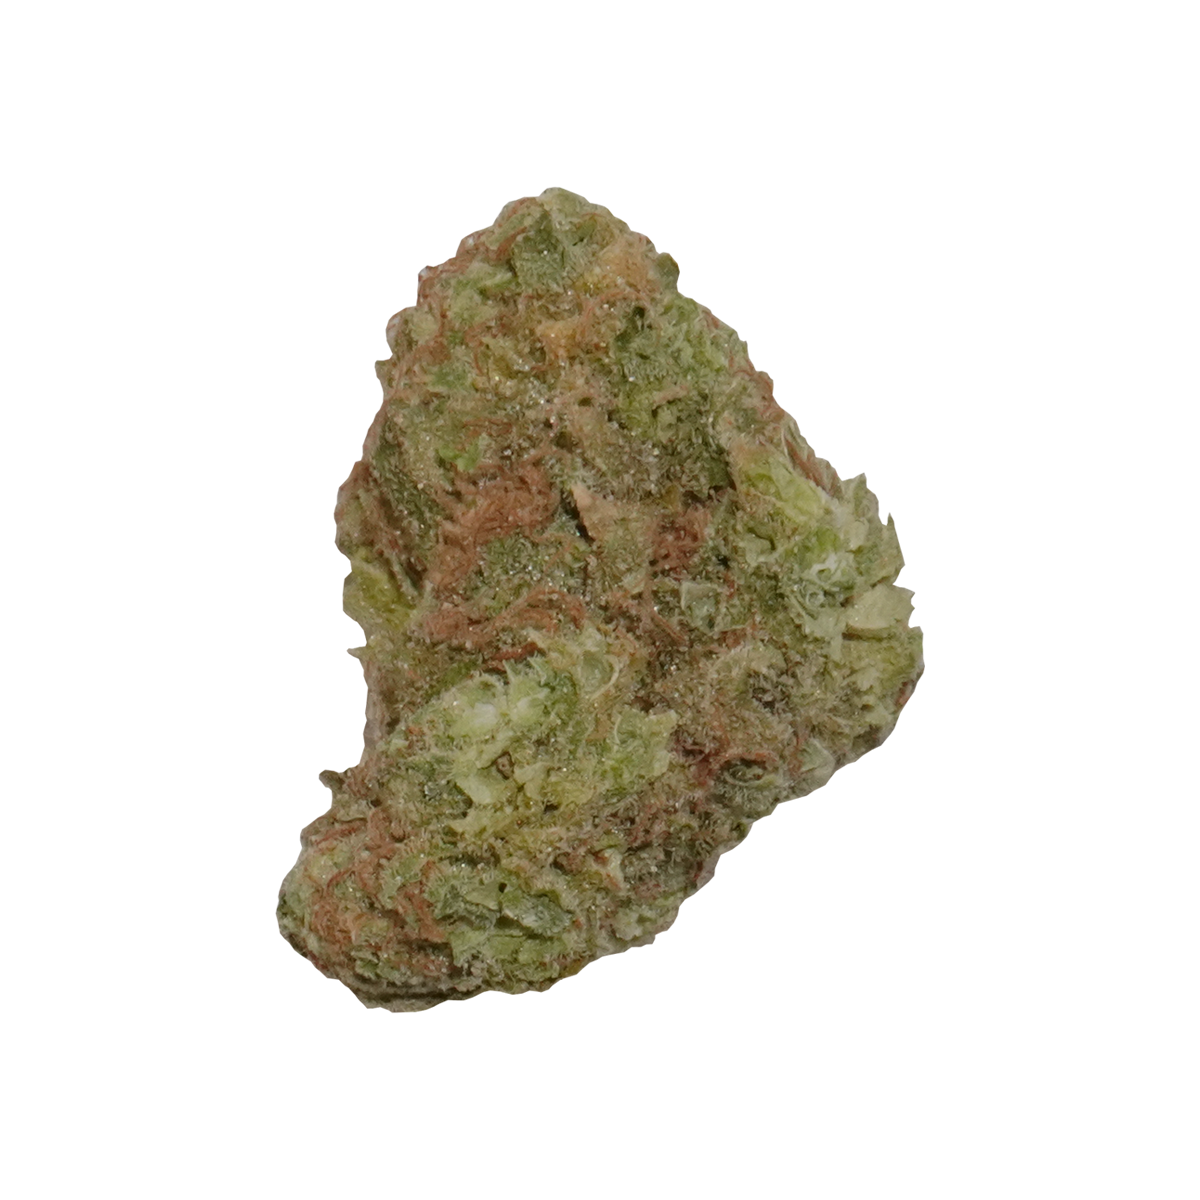 Stardawg cannabis bud